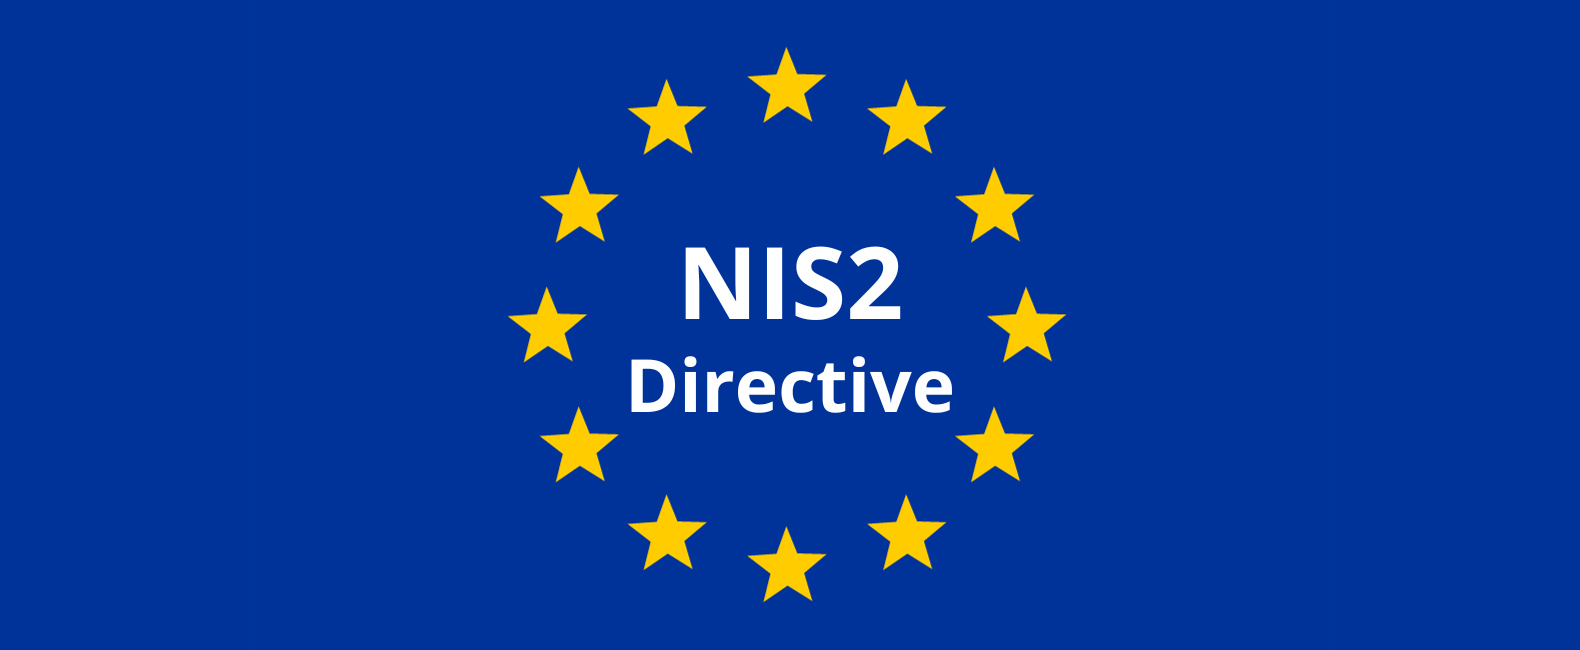 Les défis de la directive NIS2